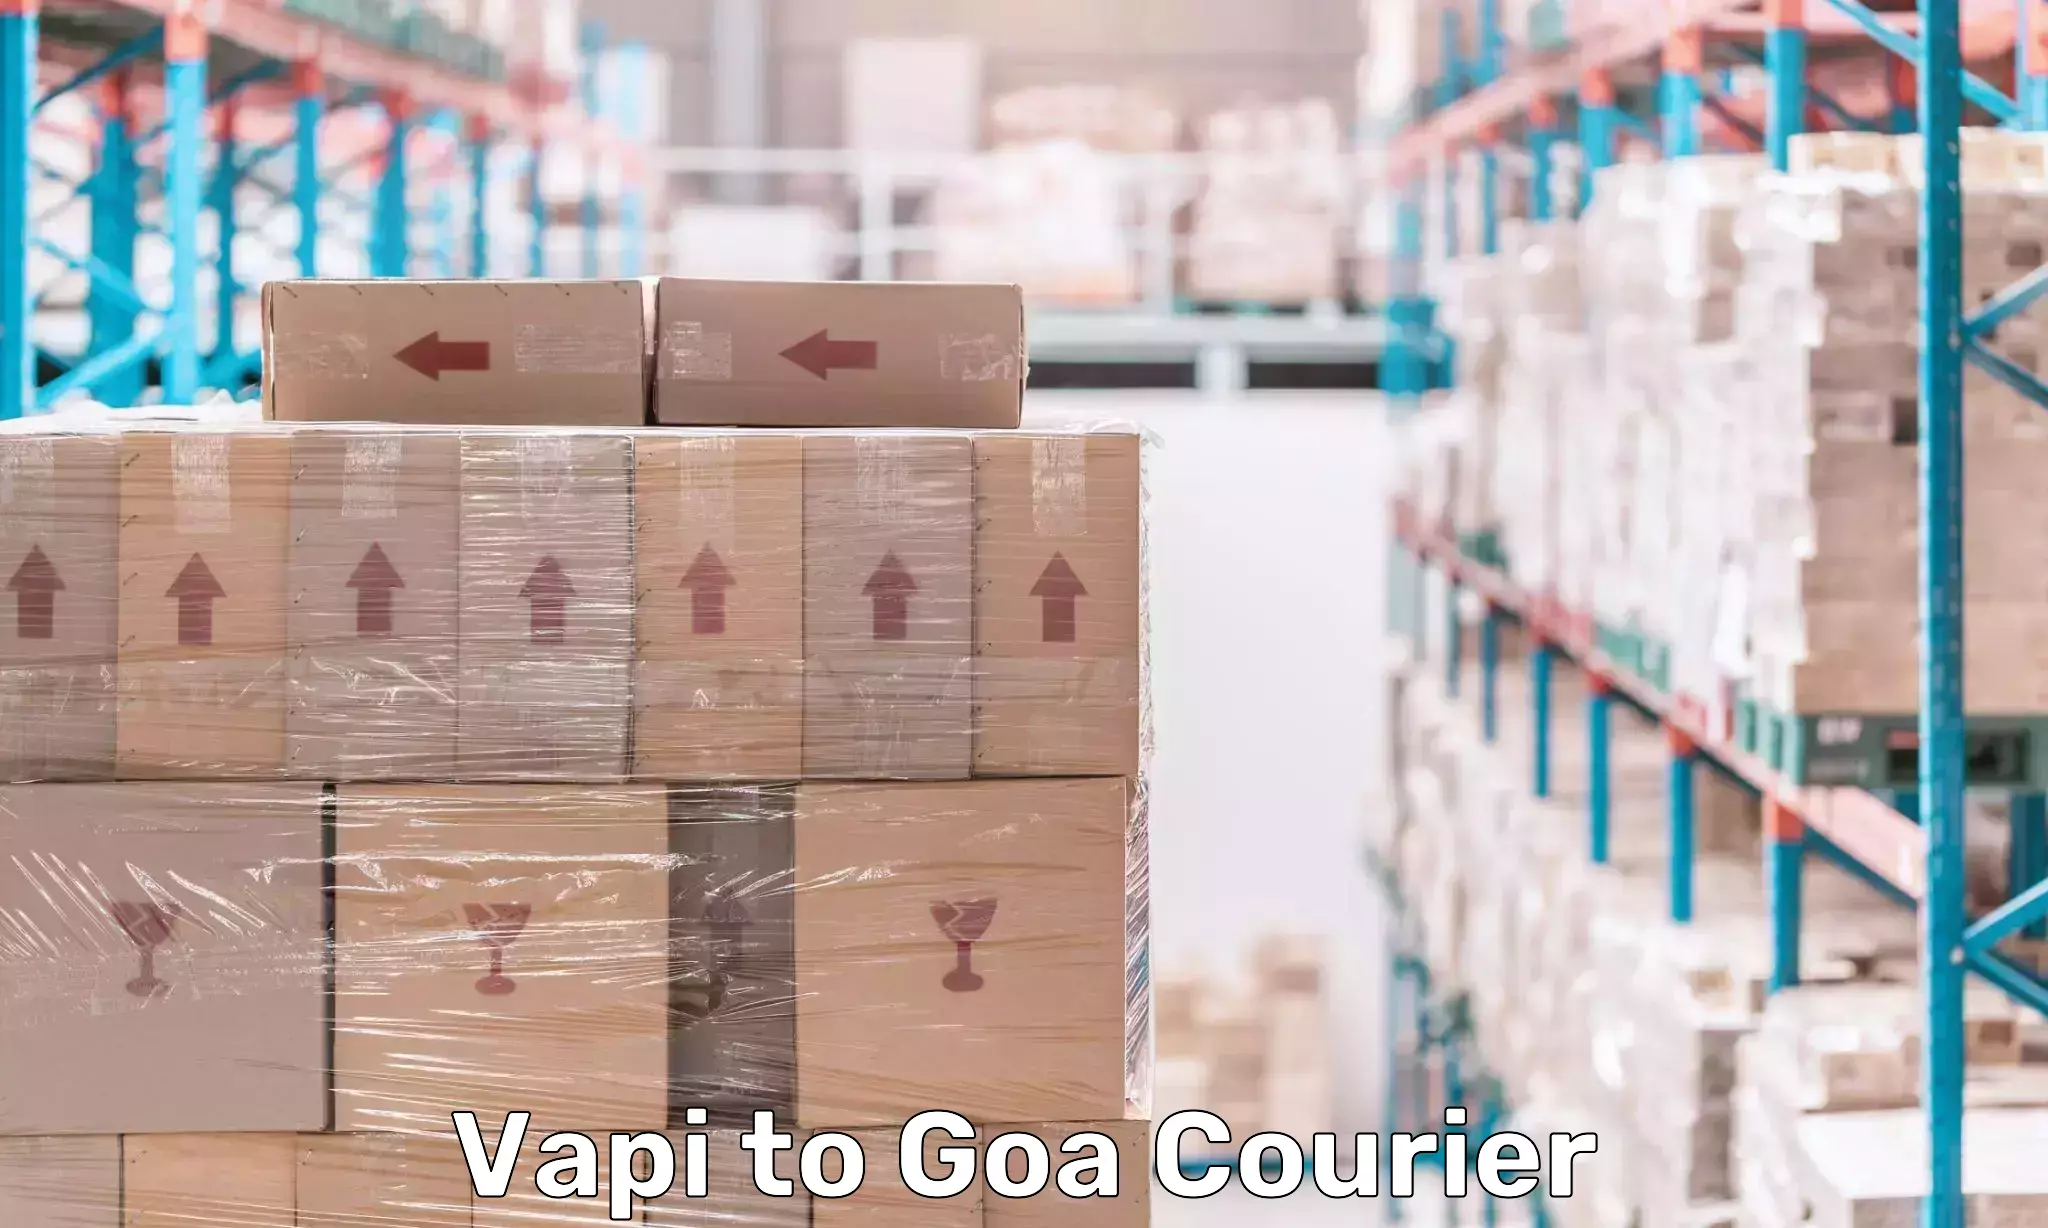 Multi-modal transportation Vapi to Goa